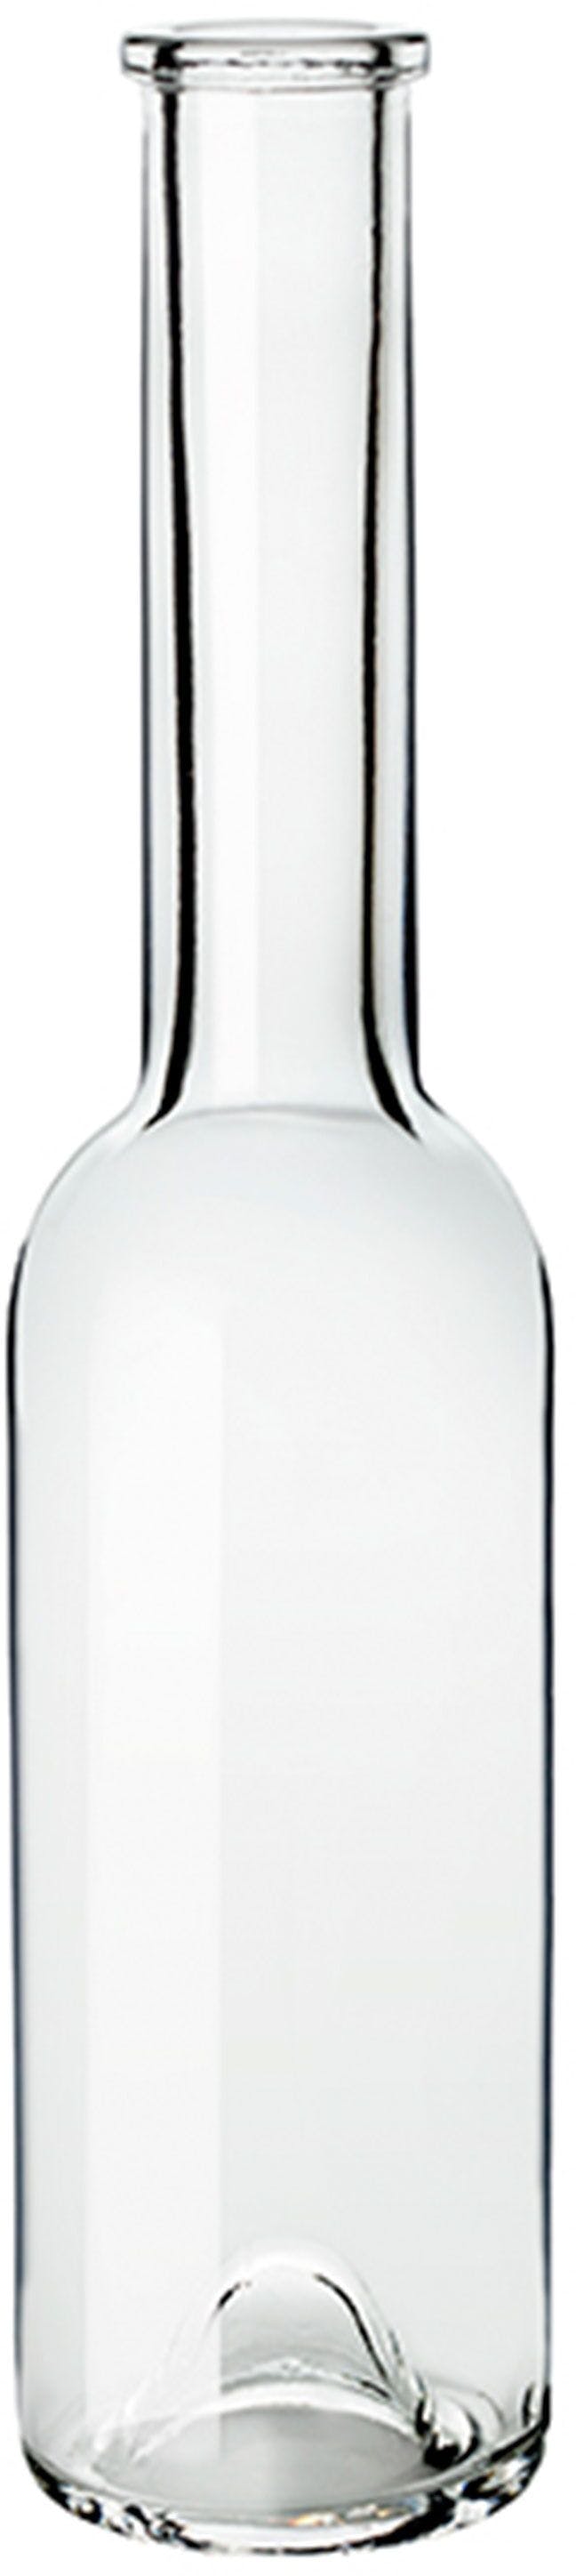 Bottle SINFONIA 200 OPERA F 5